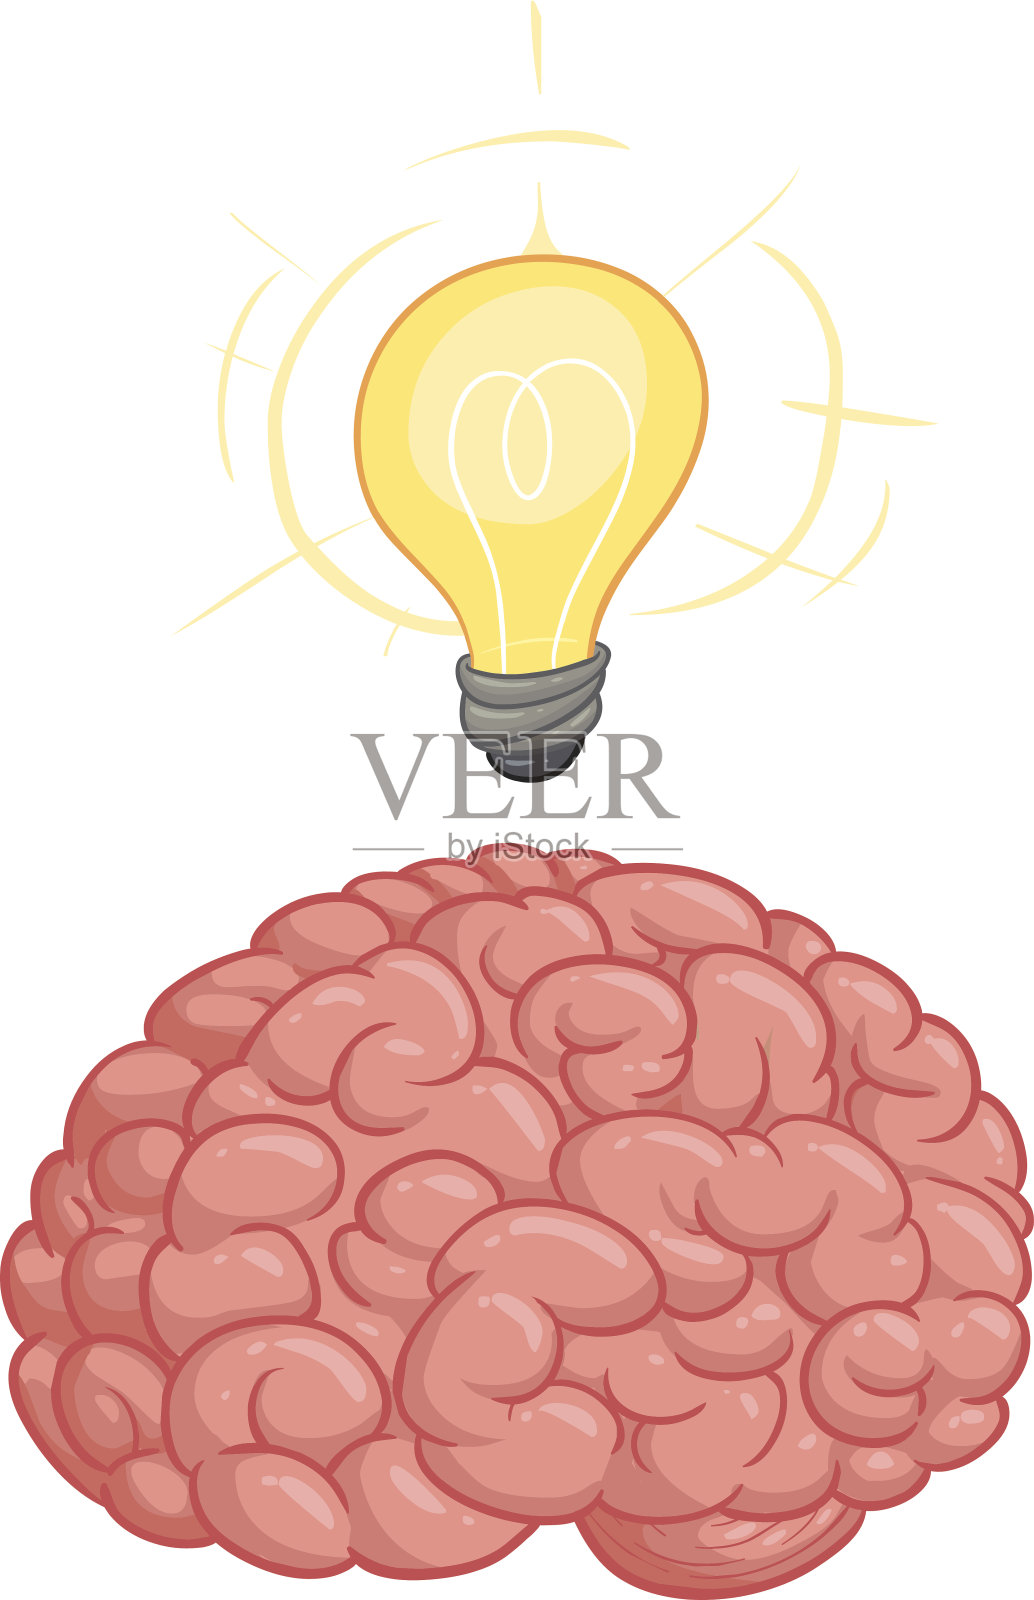 卡通大脑用灯泡来传达一个想法设计元素图片